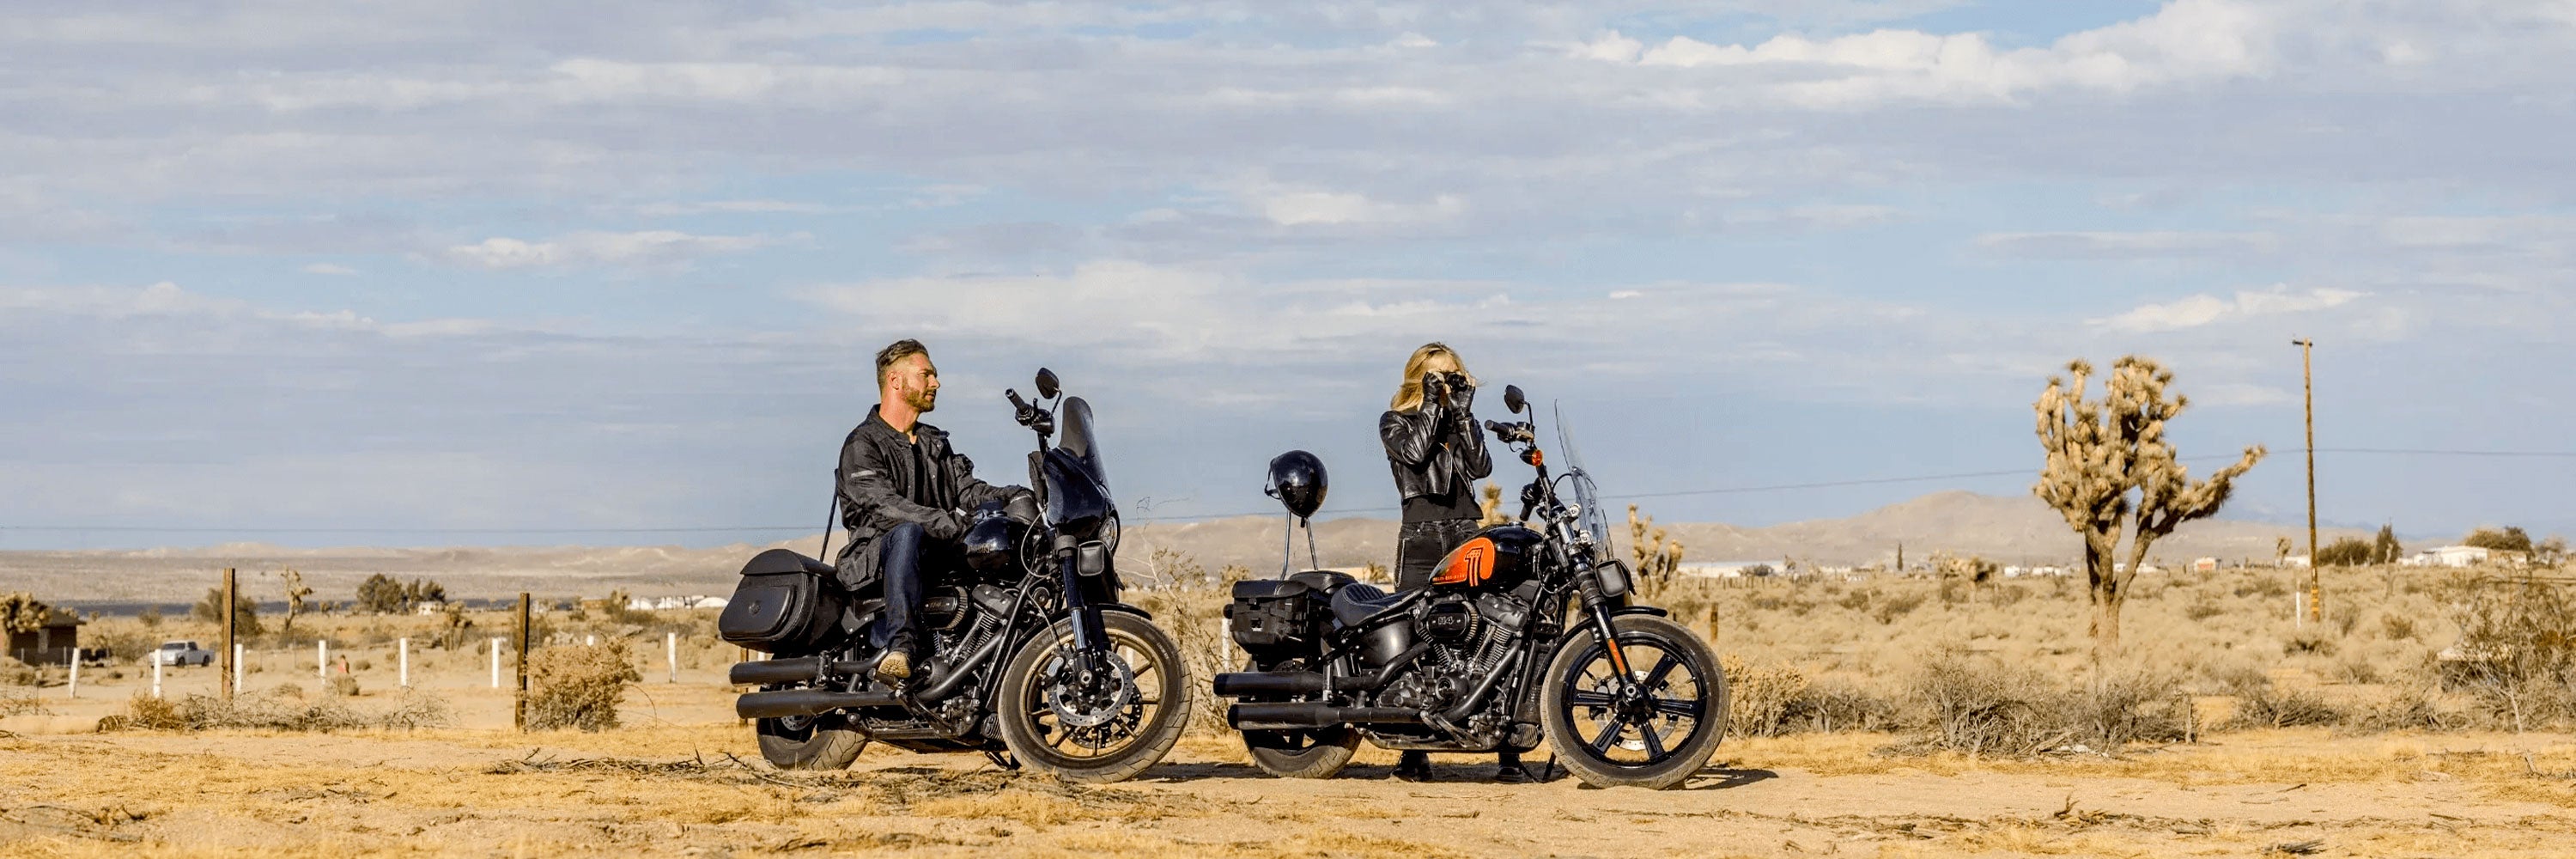 Harley Davidson Handlebars